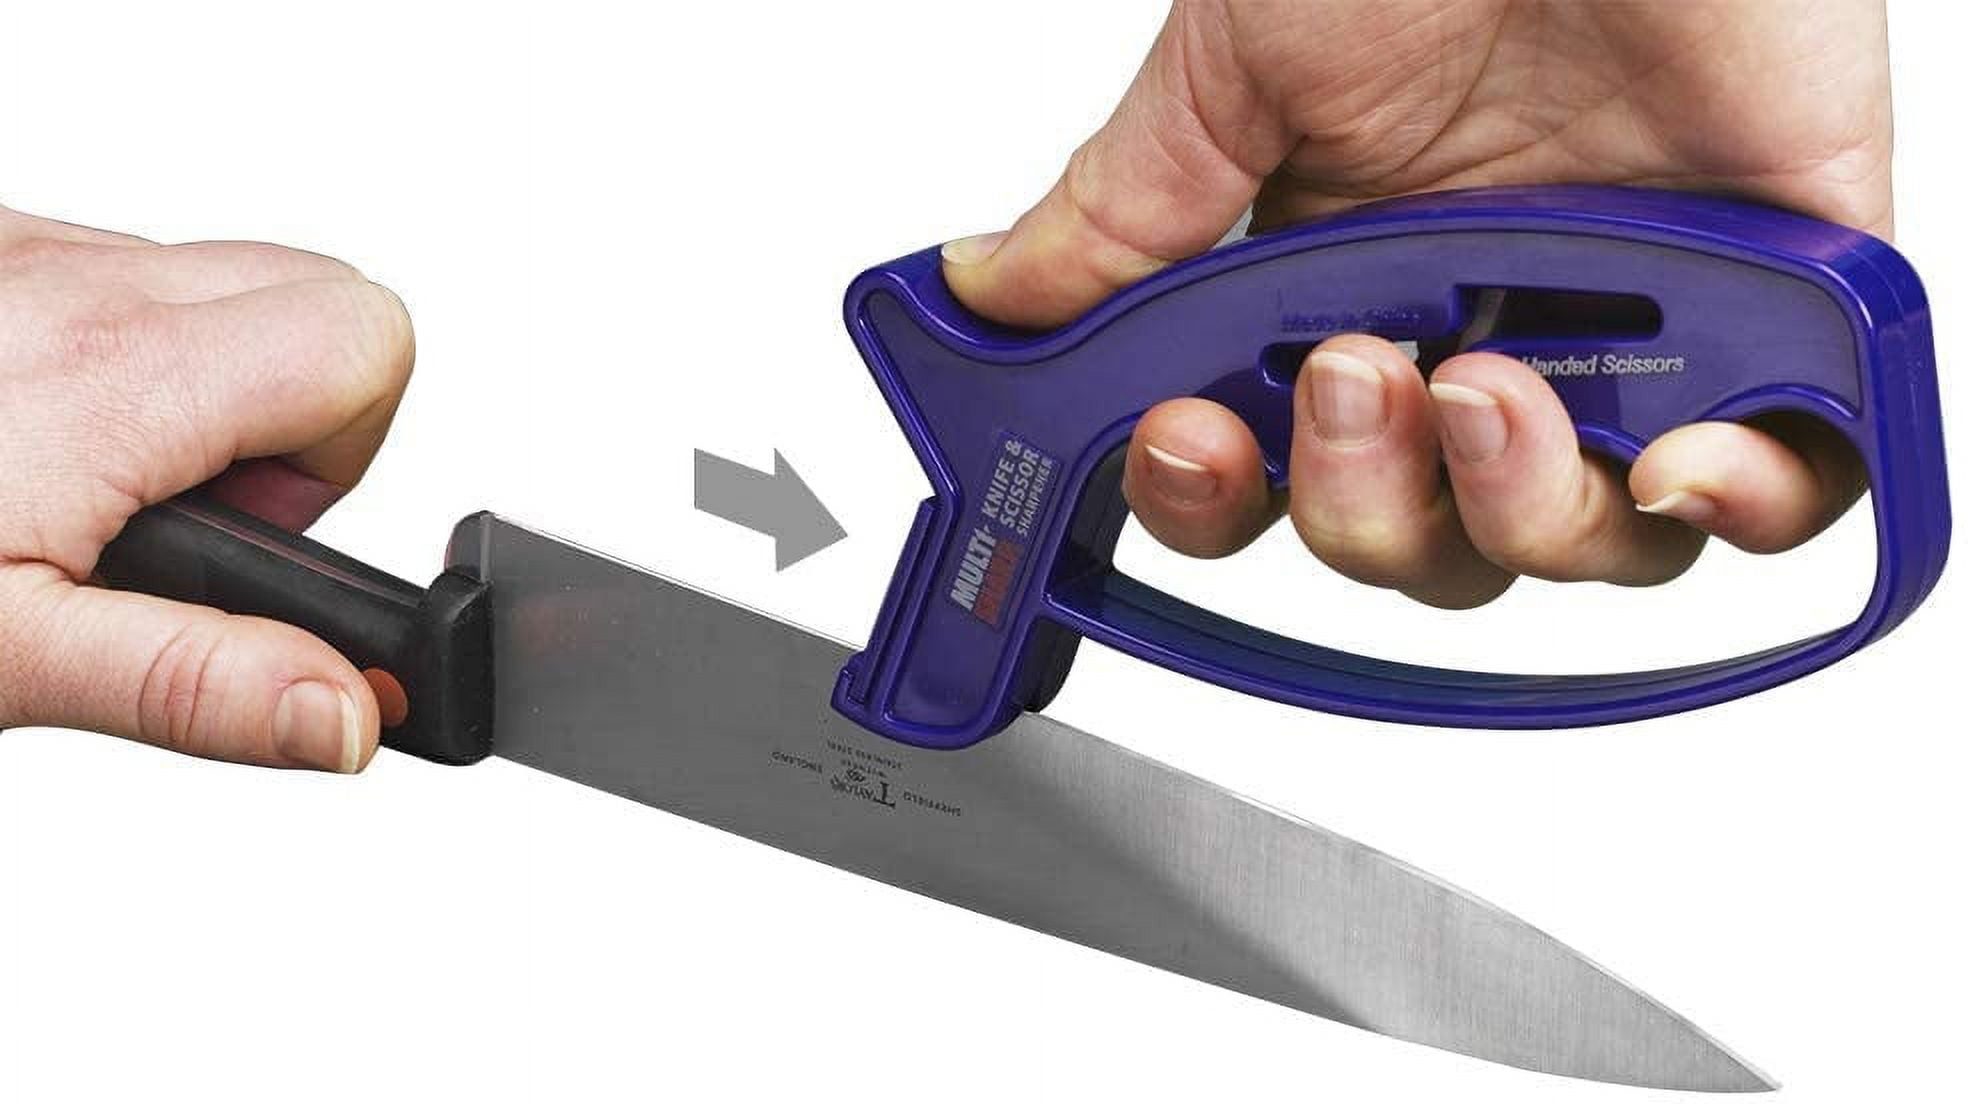 Homlly 4 in 1 Multi tool Home Knife Scissor Sharpener